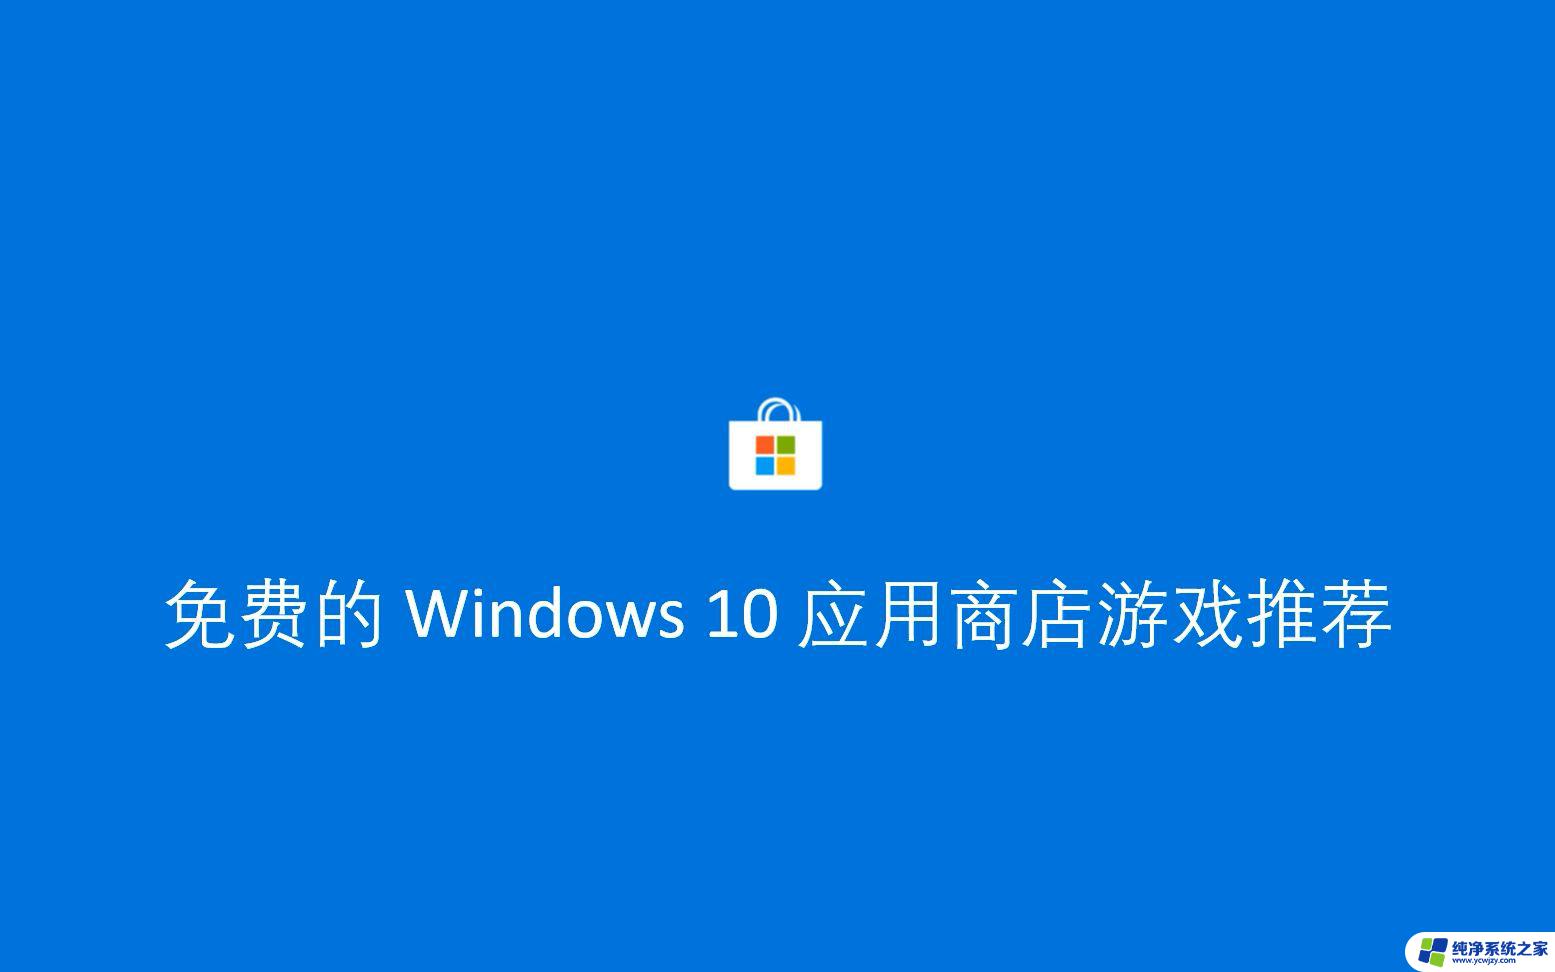 windows10可以玩什么游戏 升级到win10影响游戏运行吗